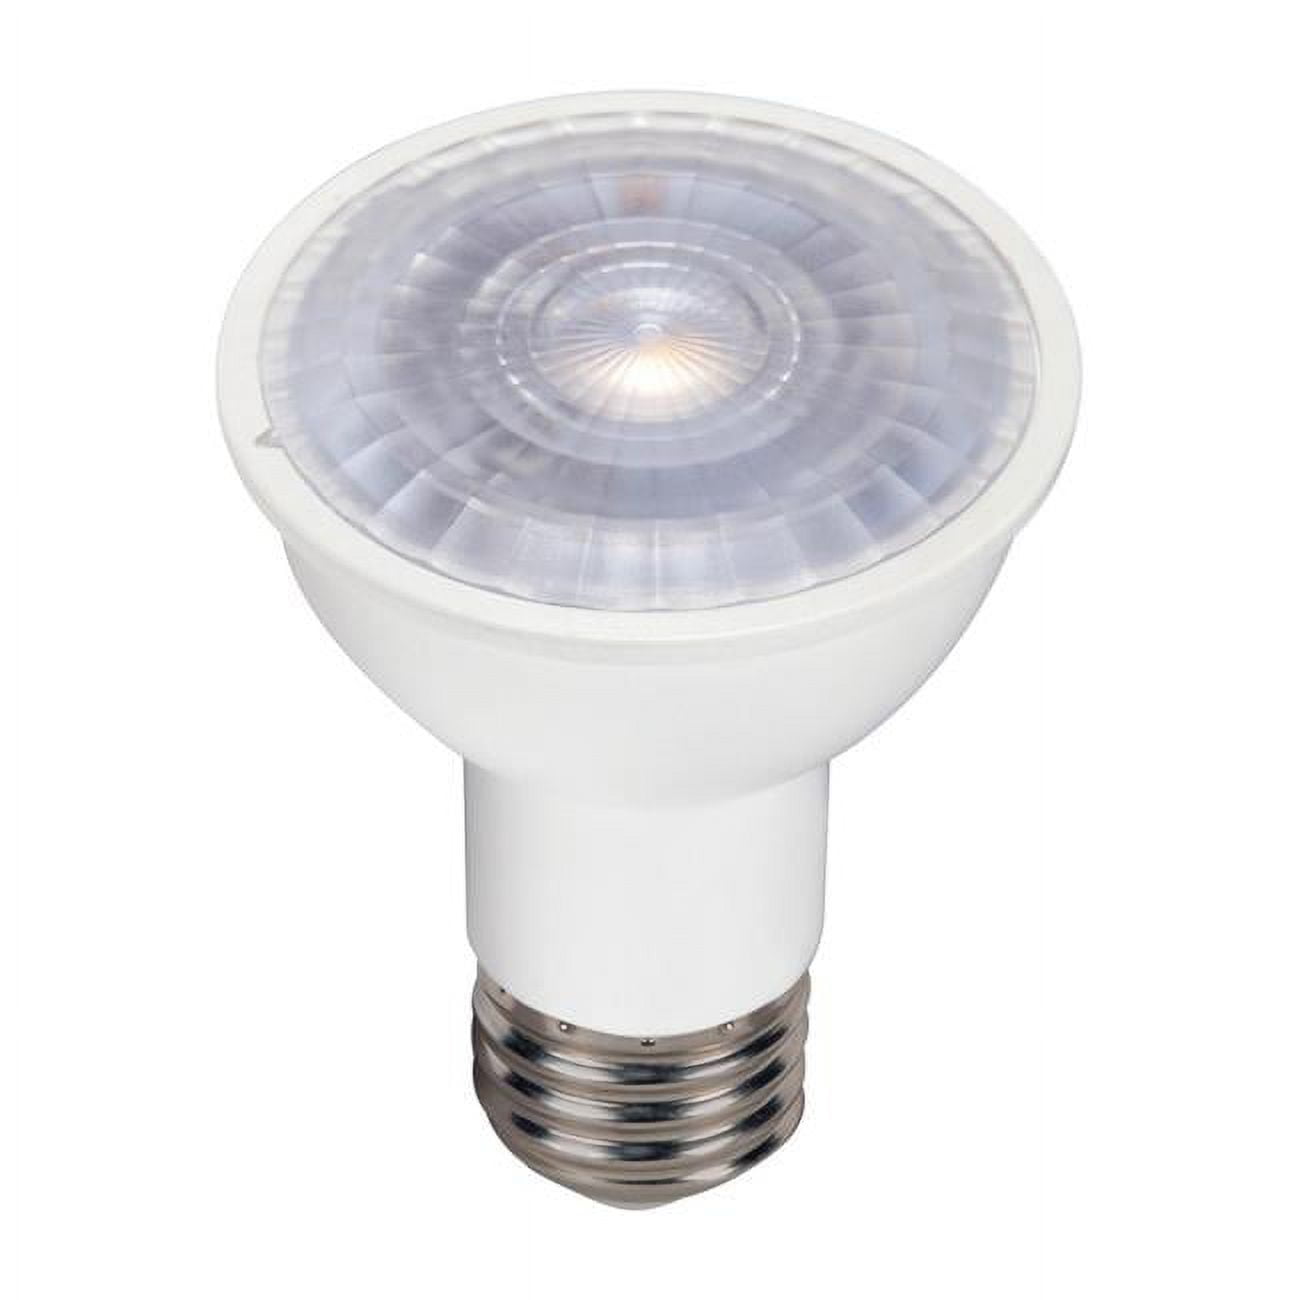 Picture of Satco 3863008 4.5W PAR16 LED Bulb, 360 Lumens - Warm White